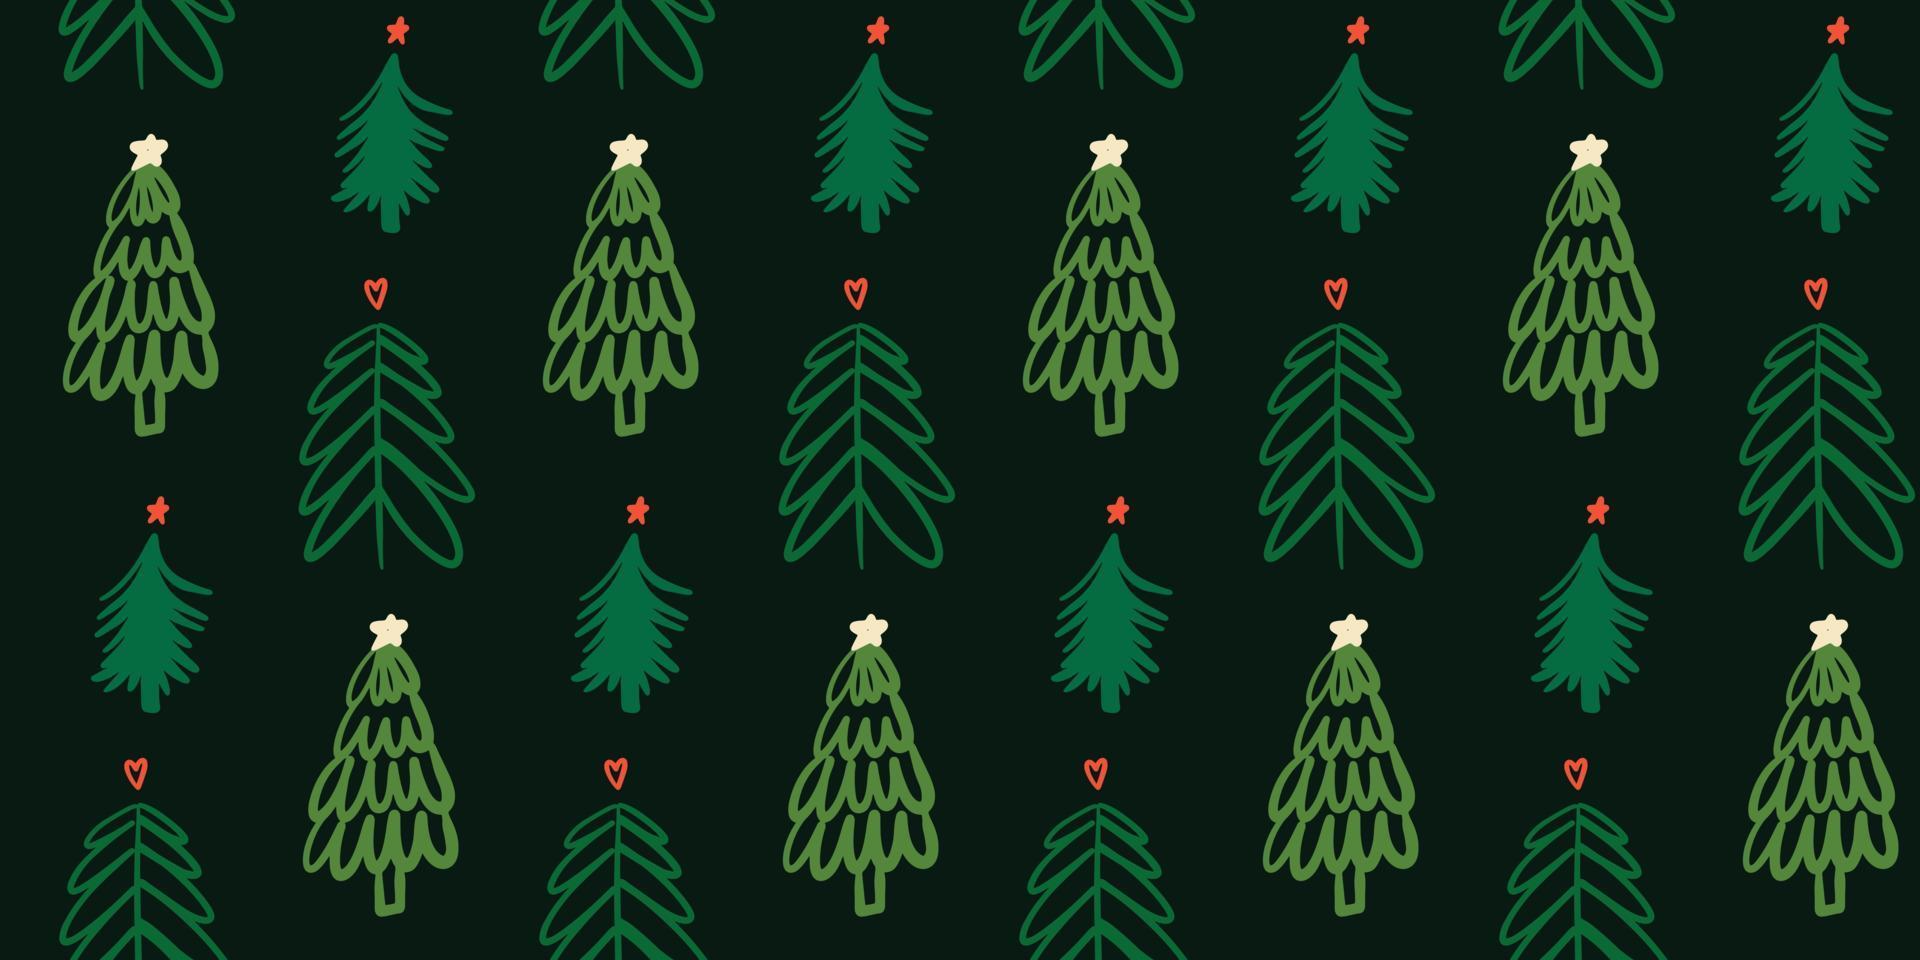 süßer dunkler winter nahtloser musterhintergrund mit einfachen kritzeleien des weihnachtsbaums im kindlichen handgezeichneten stil. saisonale Neujahrsfeiertage festliche Hintergrundtextur, Druck vektor